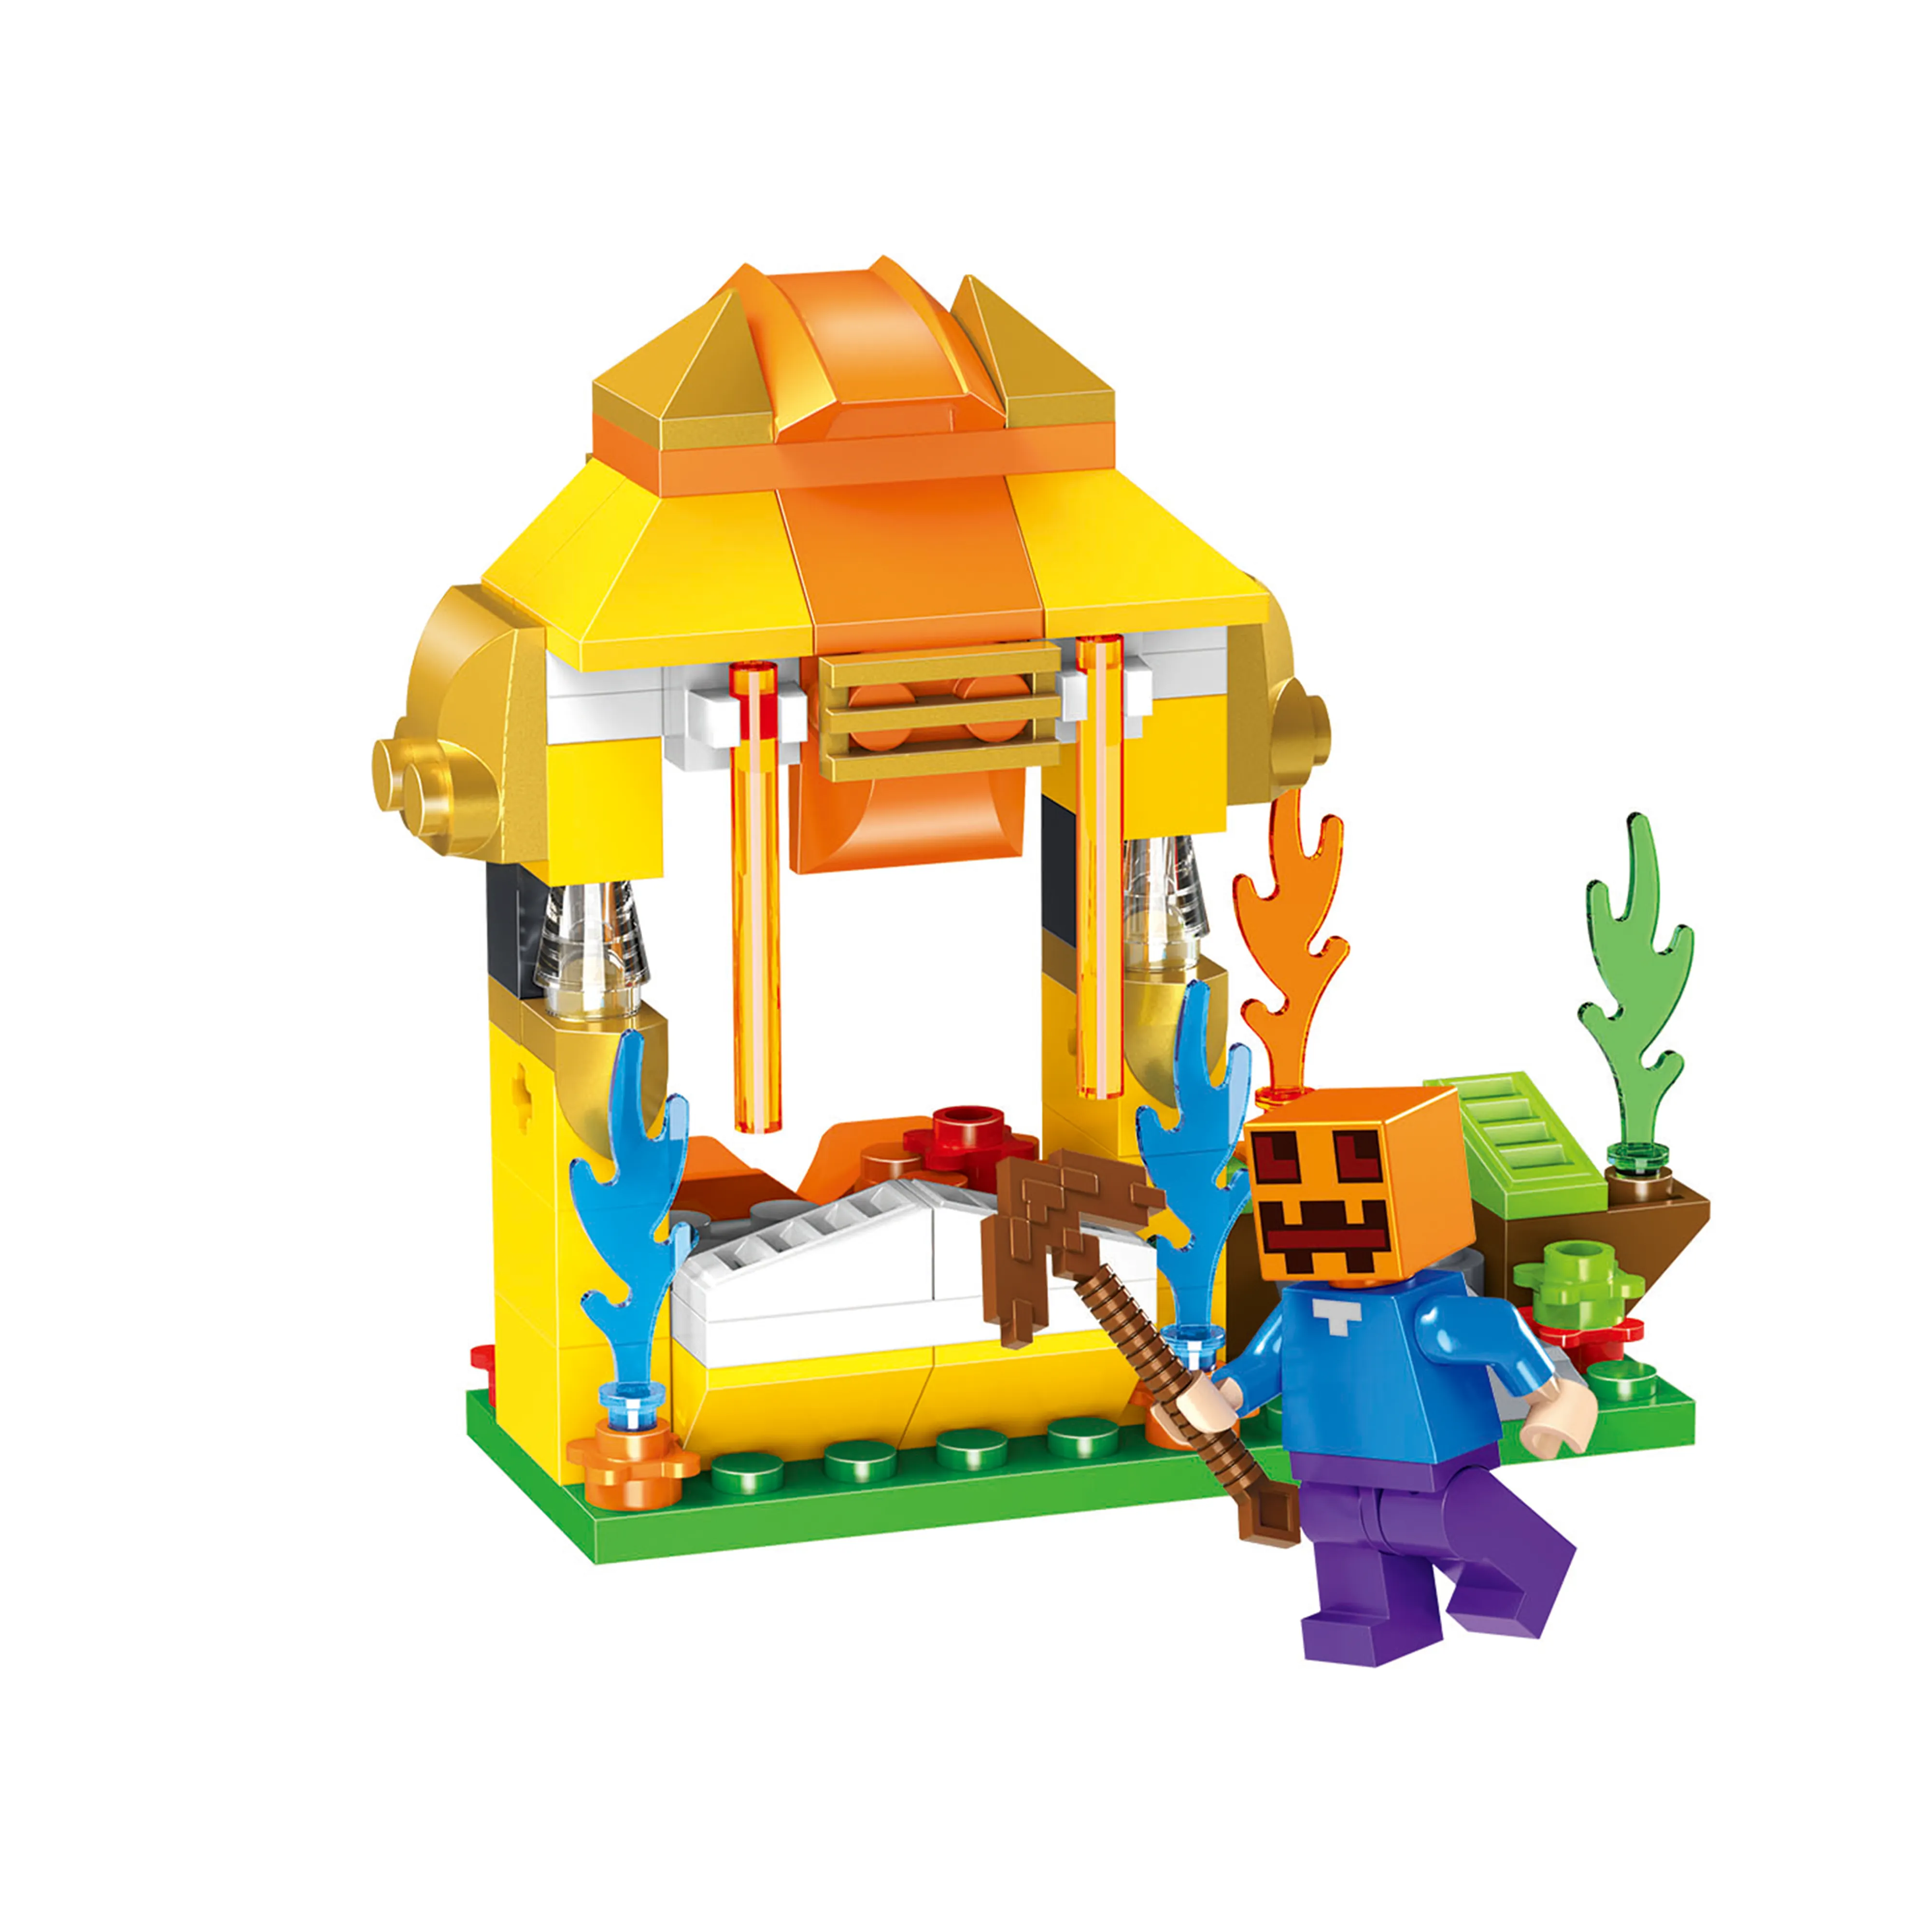 Nouvelle édition de l'ensemble de construction My World Building Blocks House Stacking Bricks Compatible Kids Toys